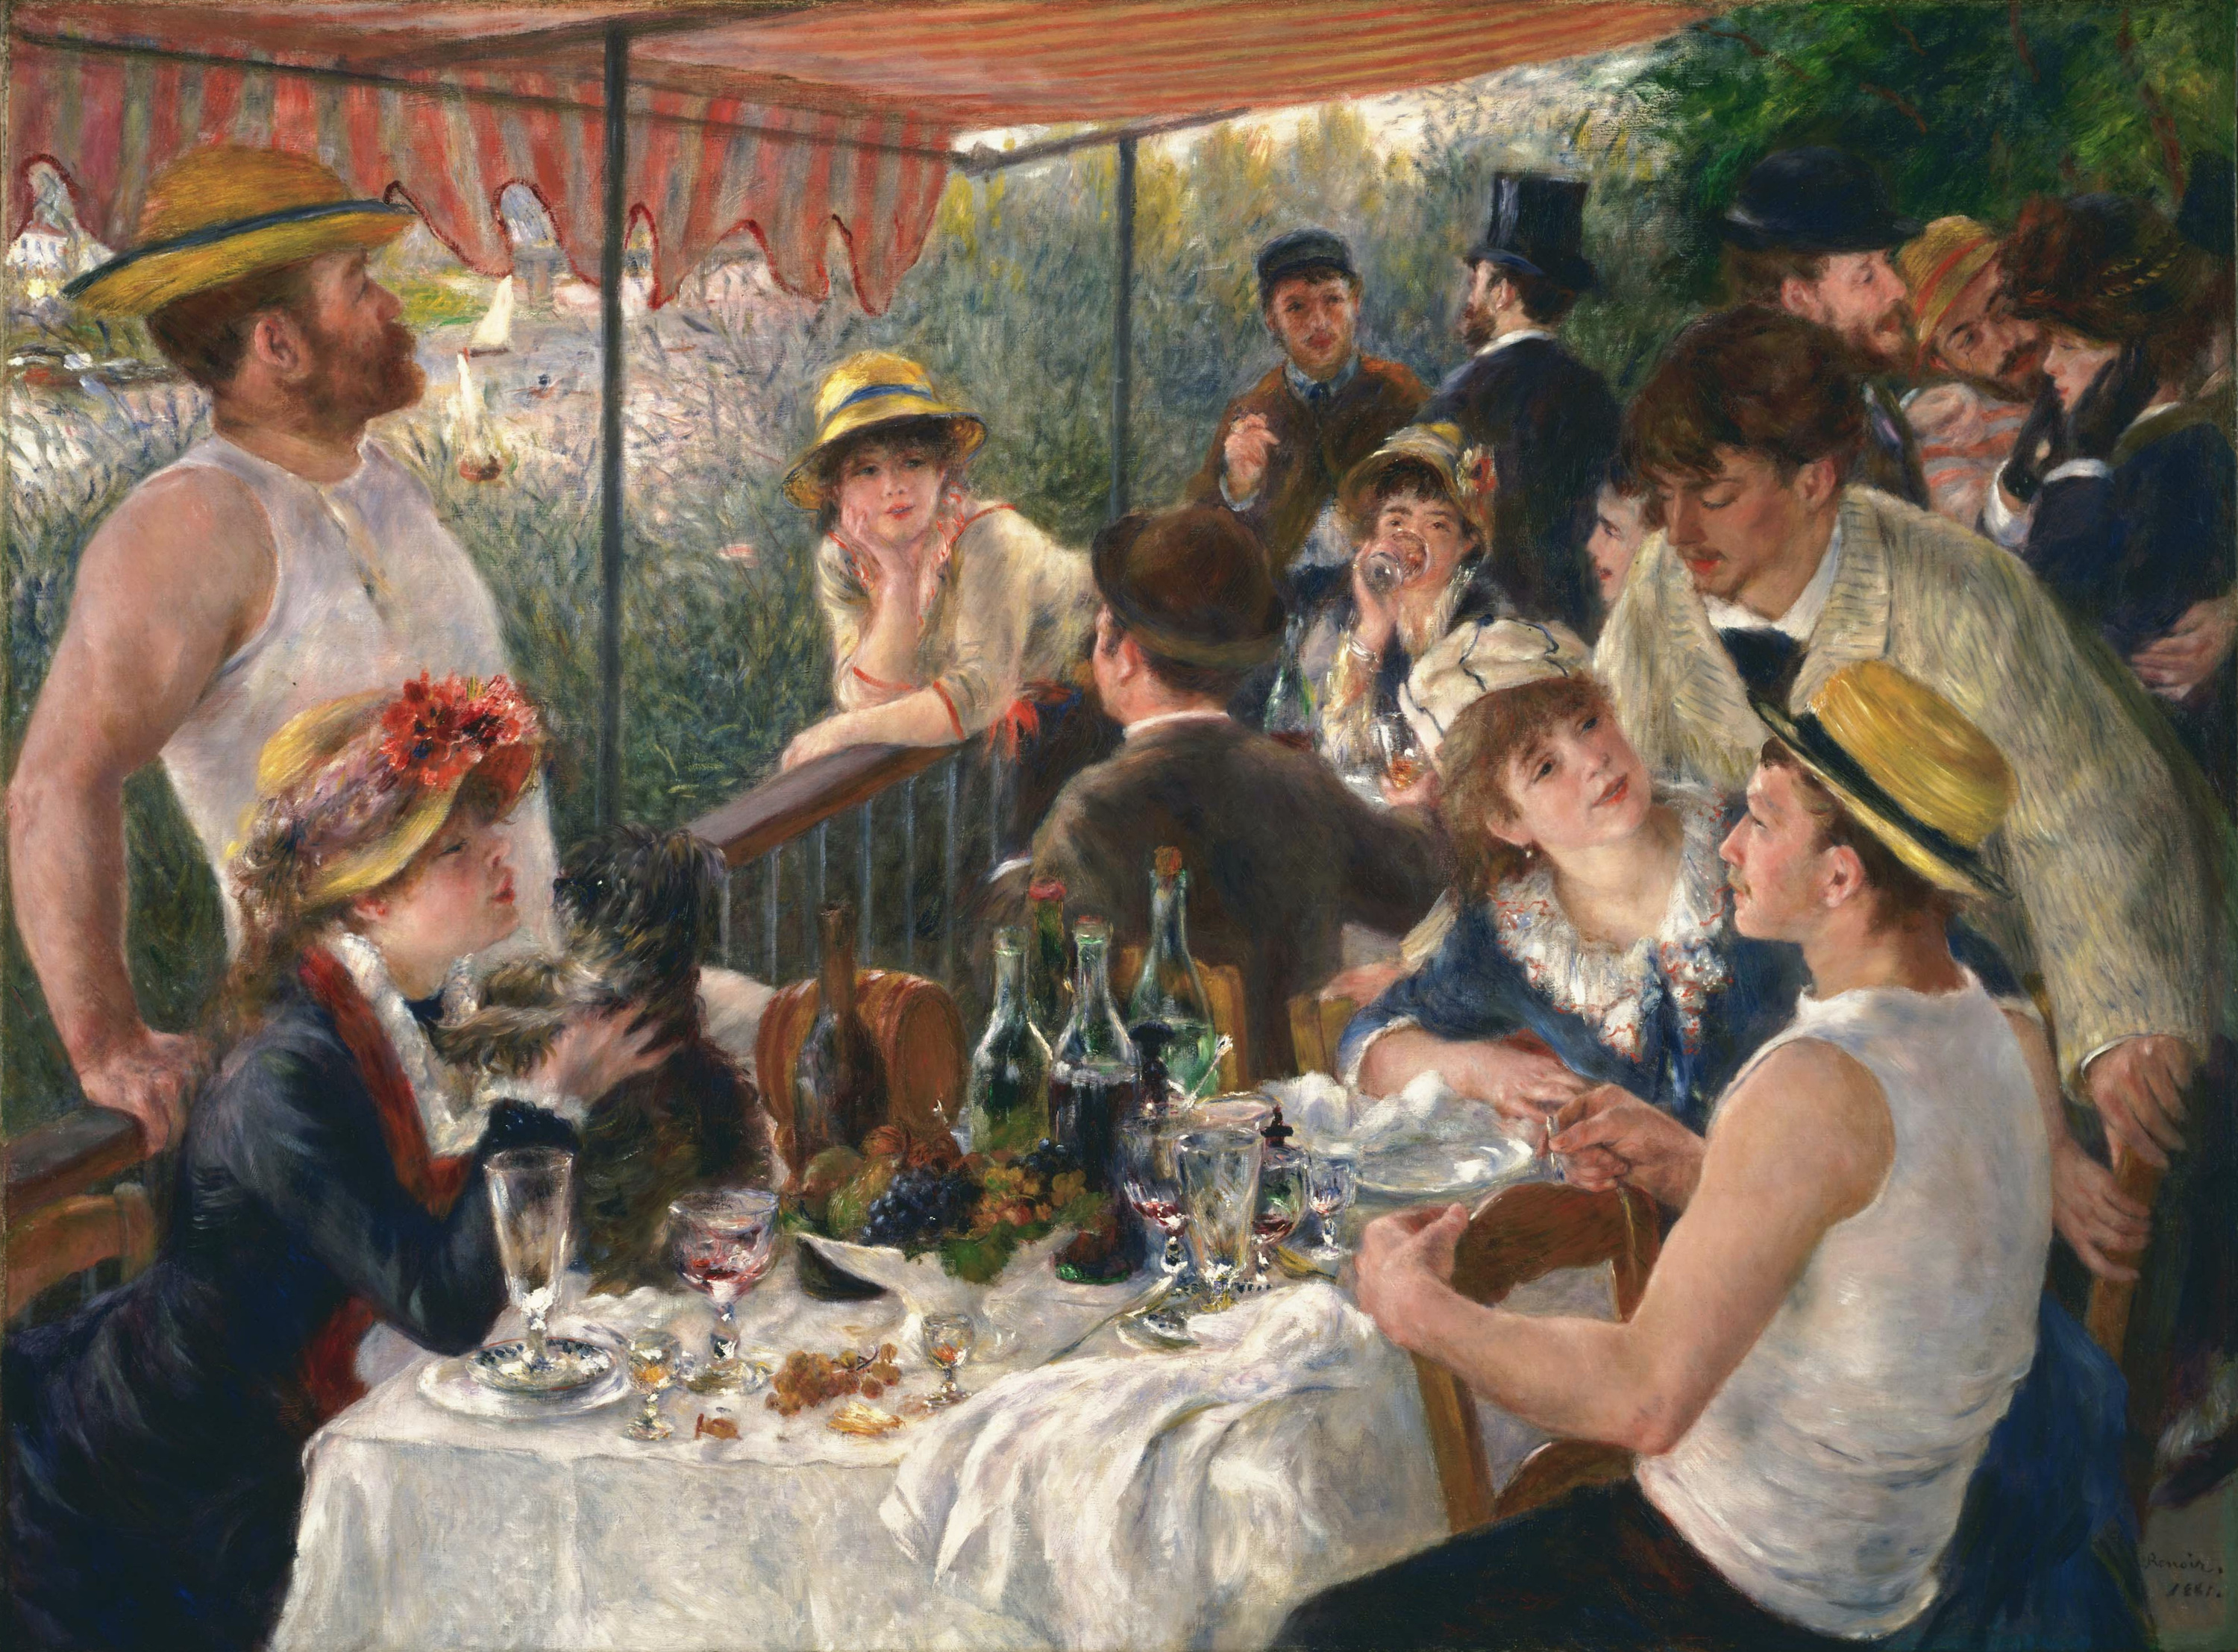 Śniadanie wioślarzy by Pierre-Auguste Renoir - 1880-1881 - 69,13 x 51,25 cali 